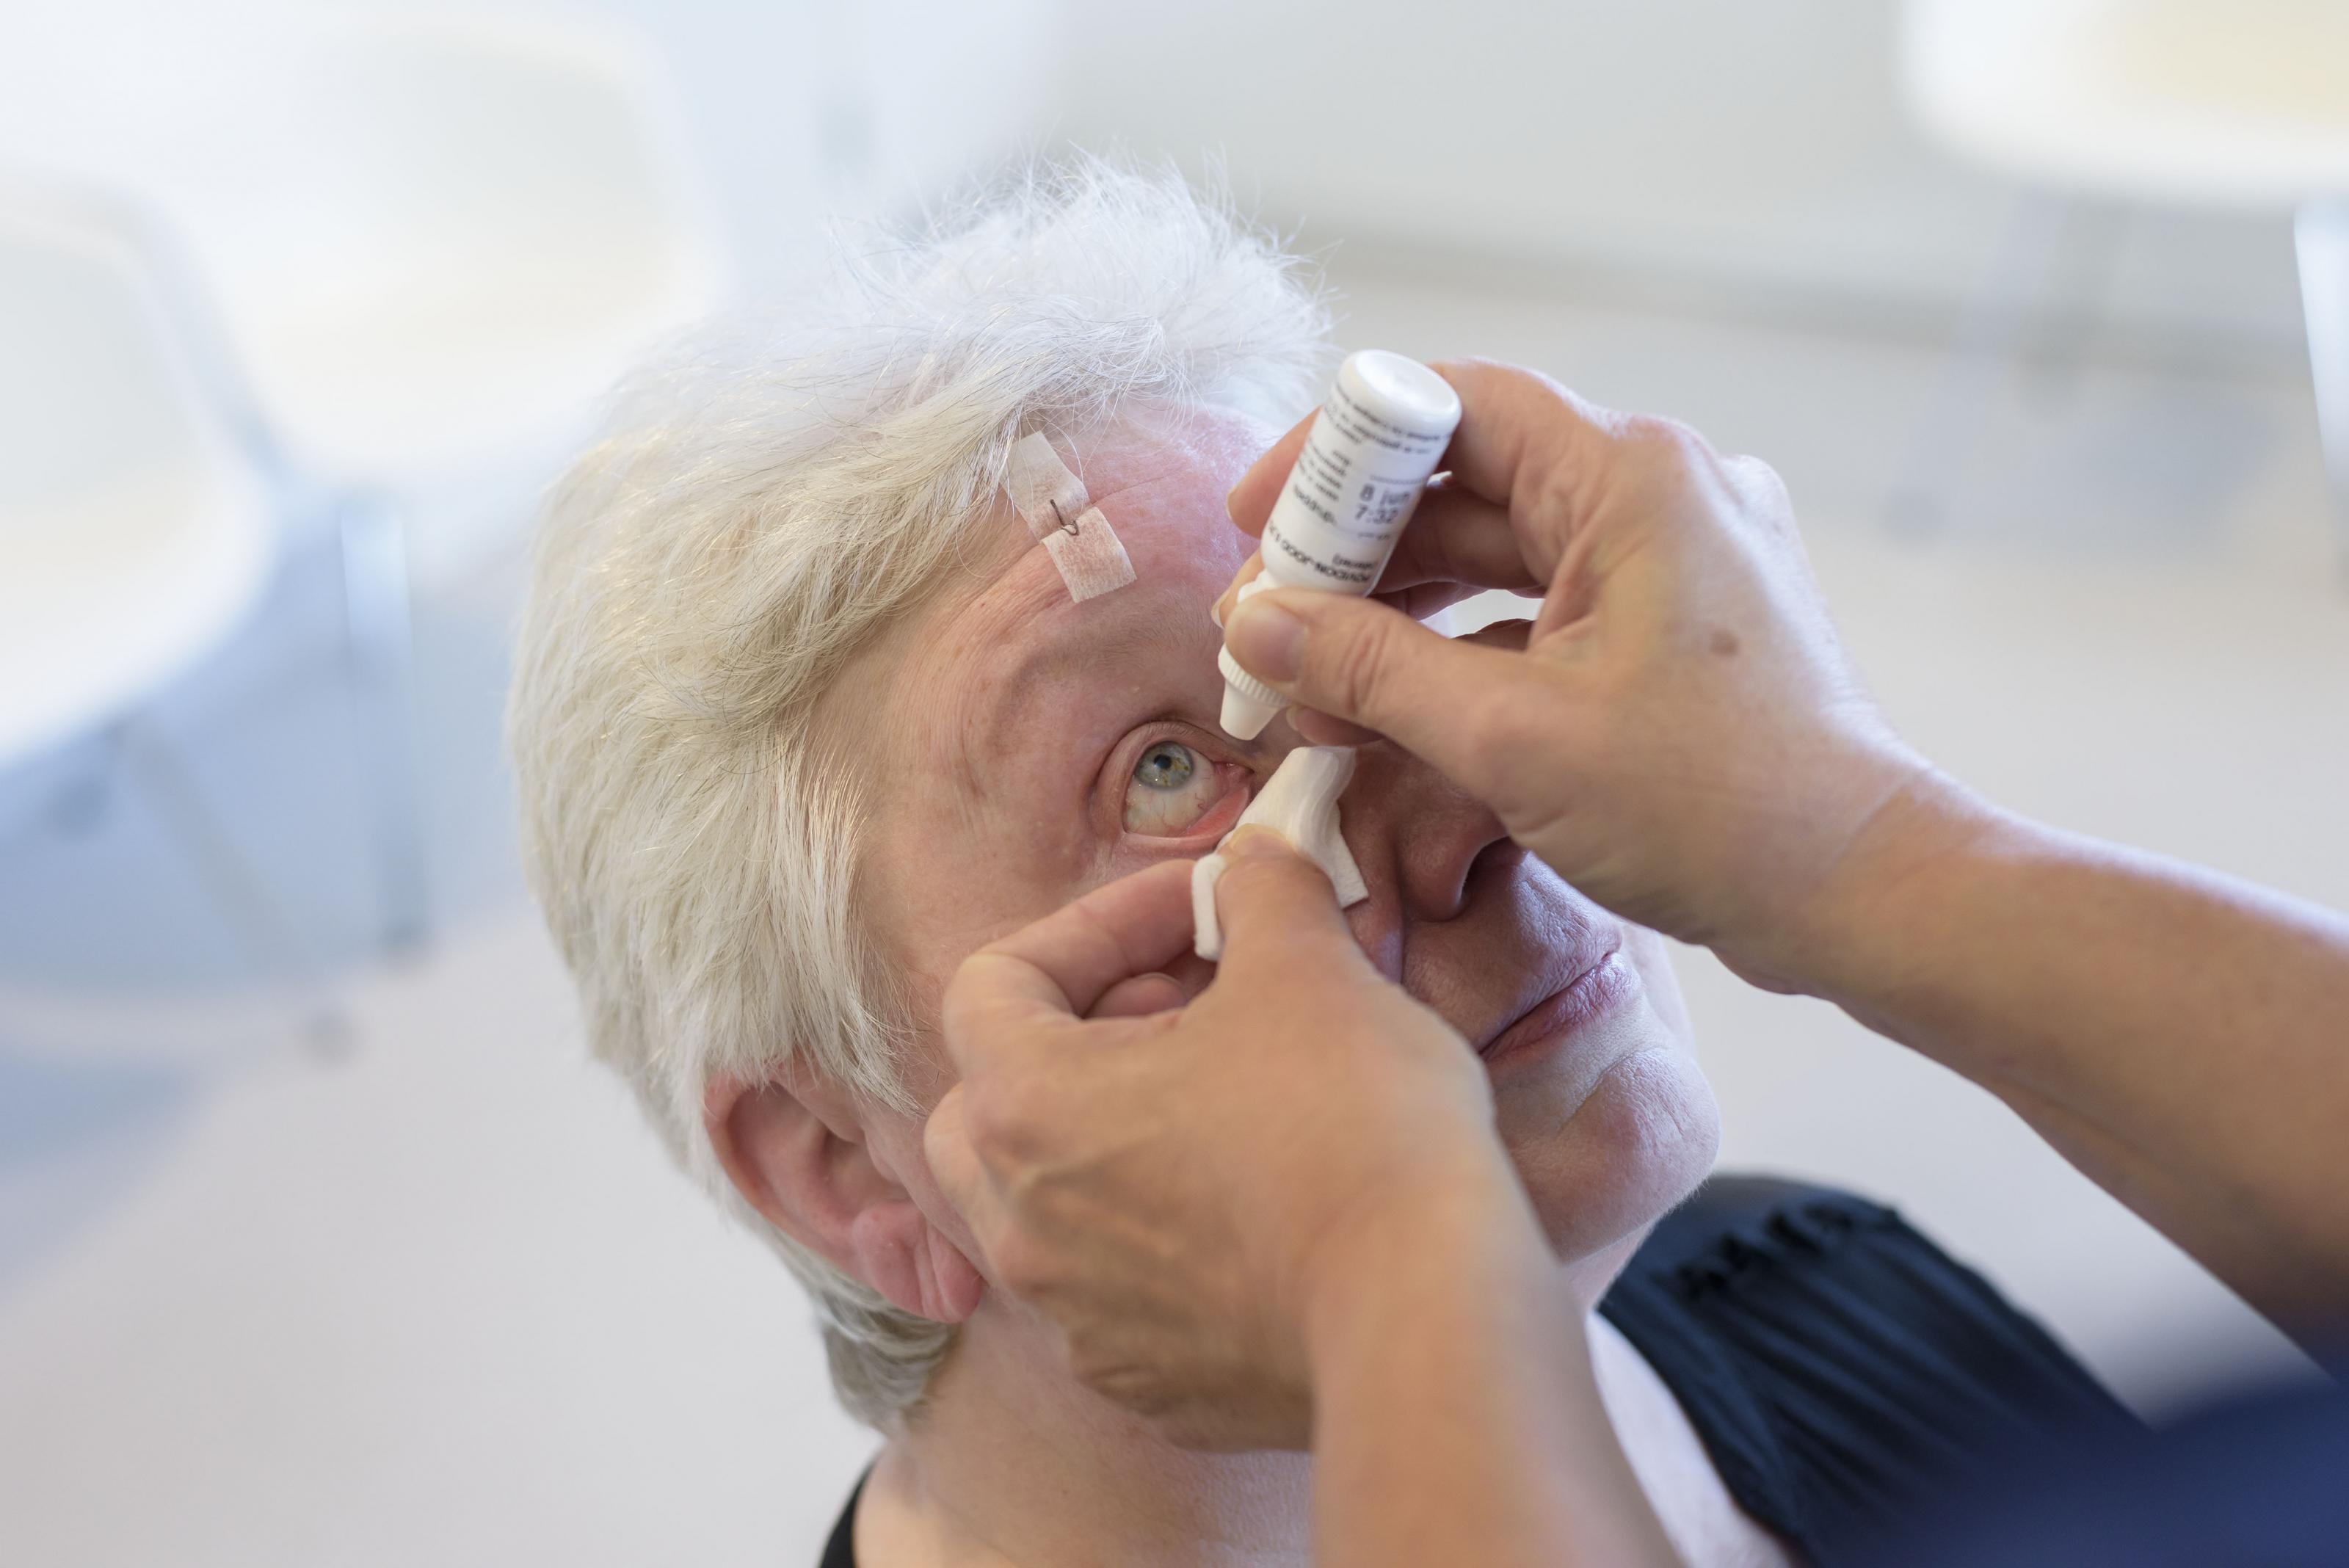 Uw oog wordt gedruppeld om uw pupil wijder te maken, dit maakt het voor de chirurg mogelijk om uw oog te opereren.